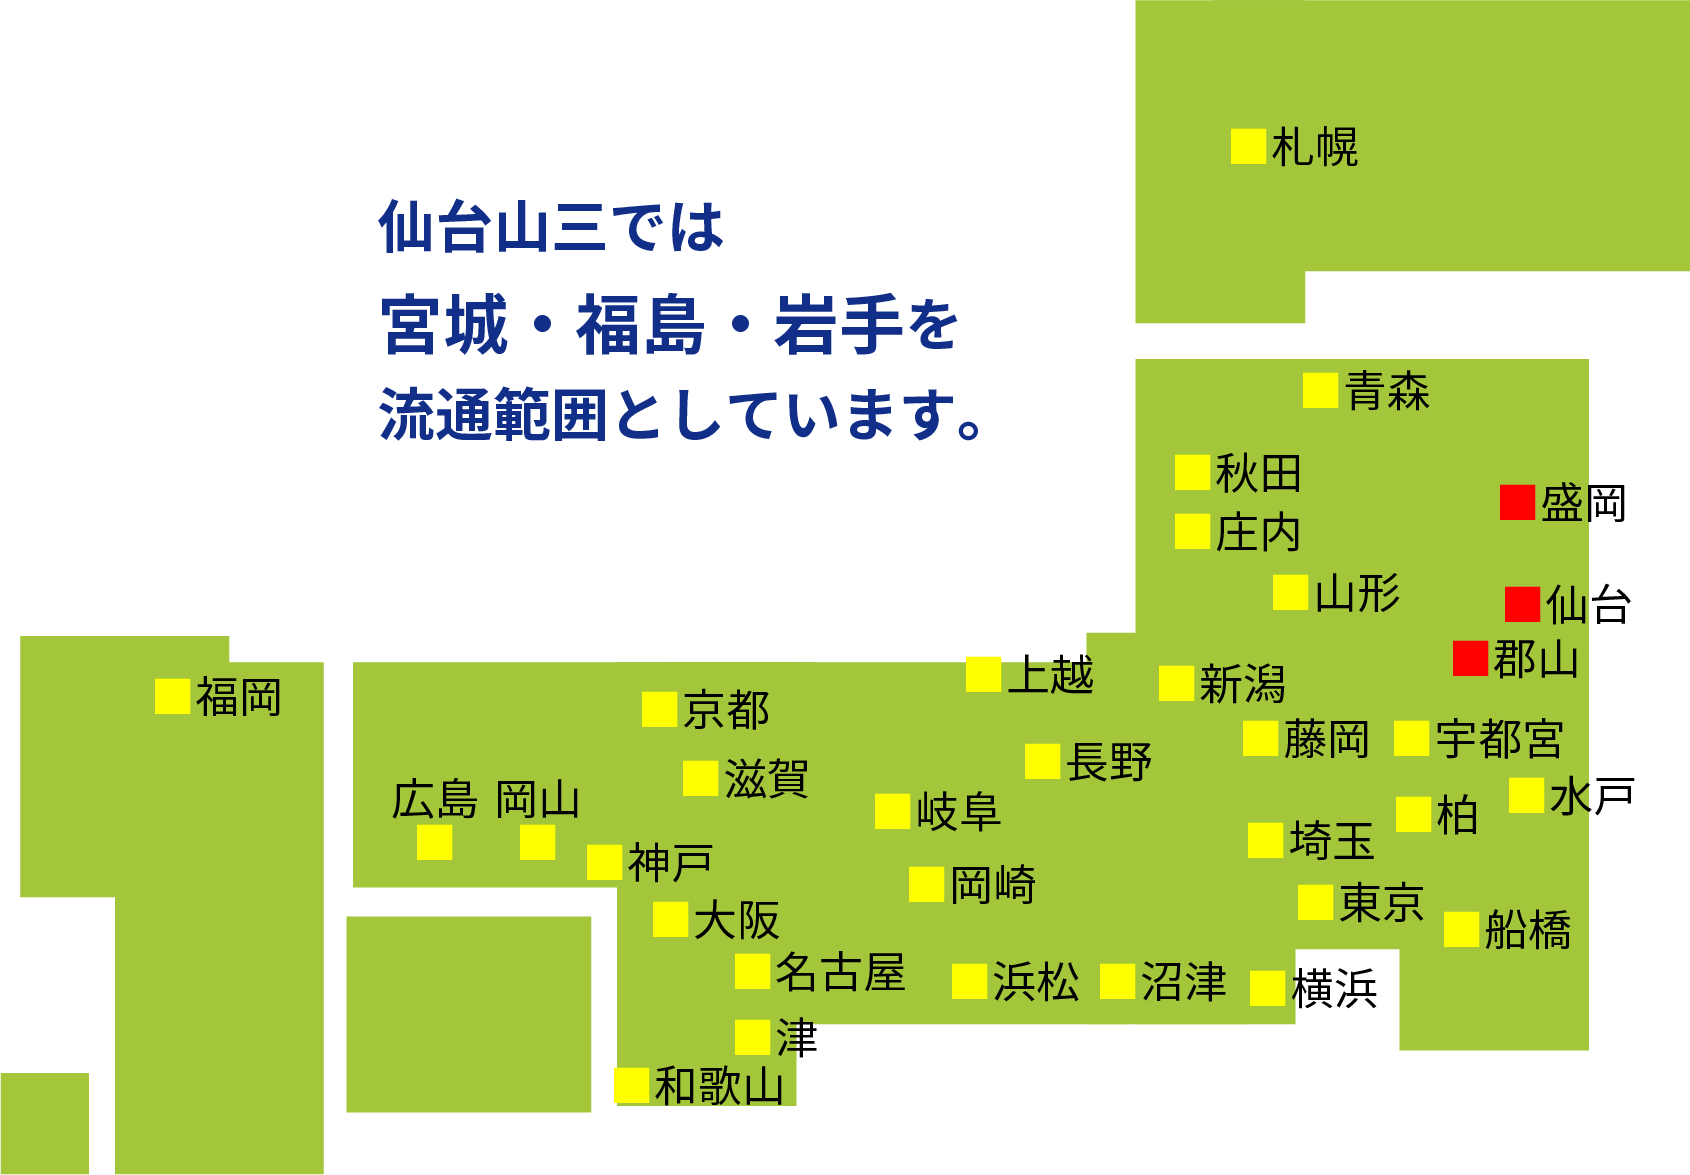 仙台山三では宮城・福島・岩手を流通範囲としています。